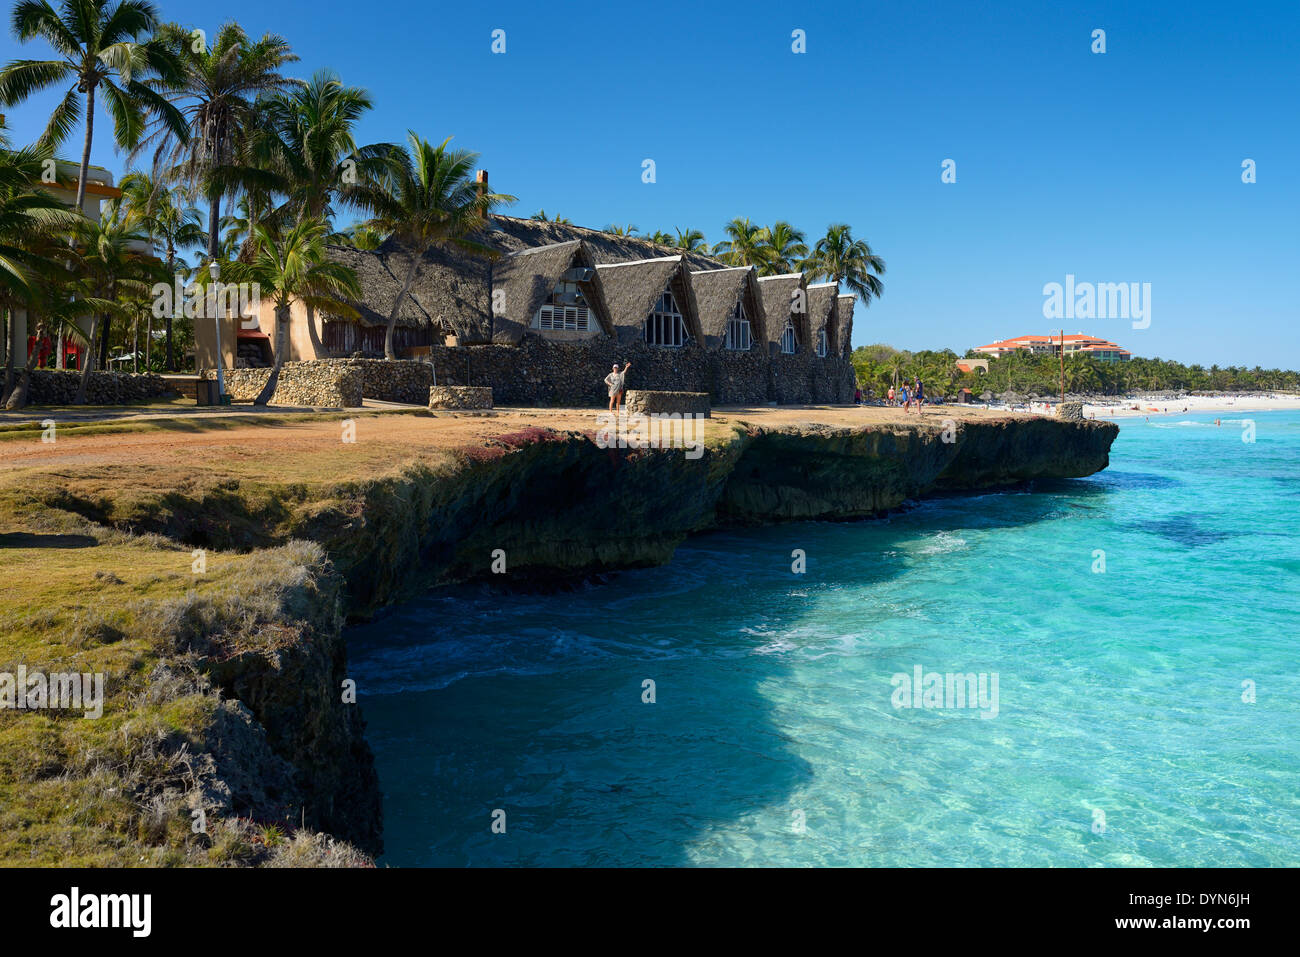 La pierre de lave la côte et plage de sable blanc et eau turquoise à Varadero Cuba resort hotel de la baie de Cardenas océan Atlantique Banque D'Images